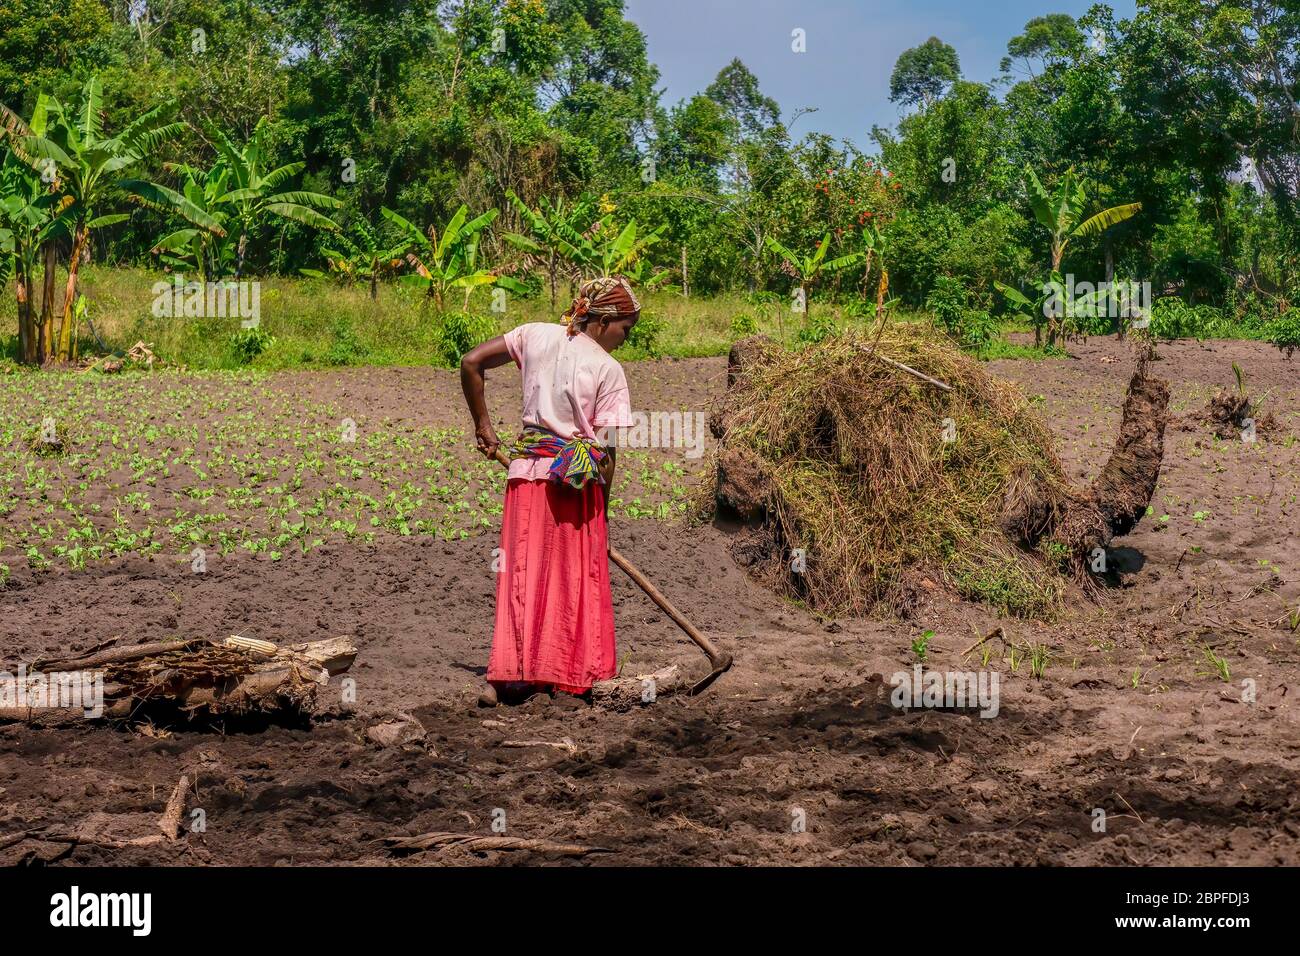 Rural Uganda - September 14, 2014. An African woman prepares garden soil for planting vegetables. Stock Photo